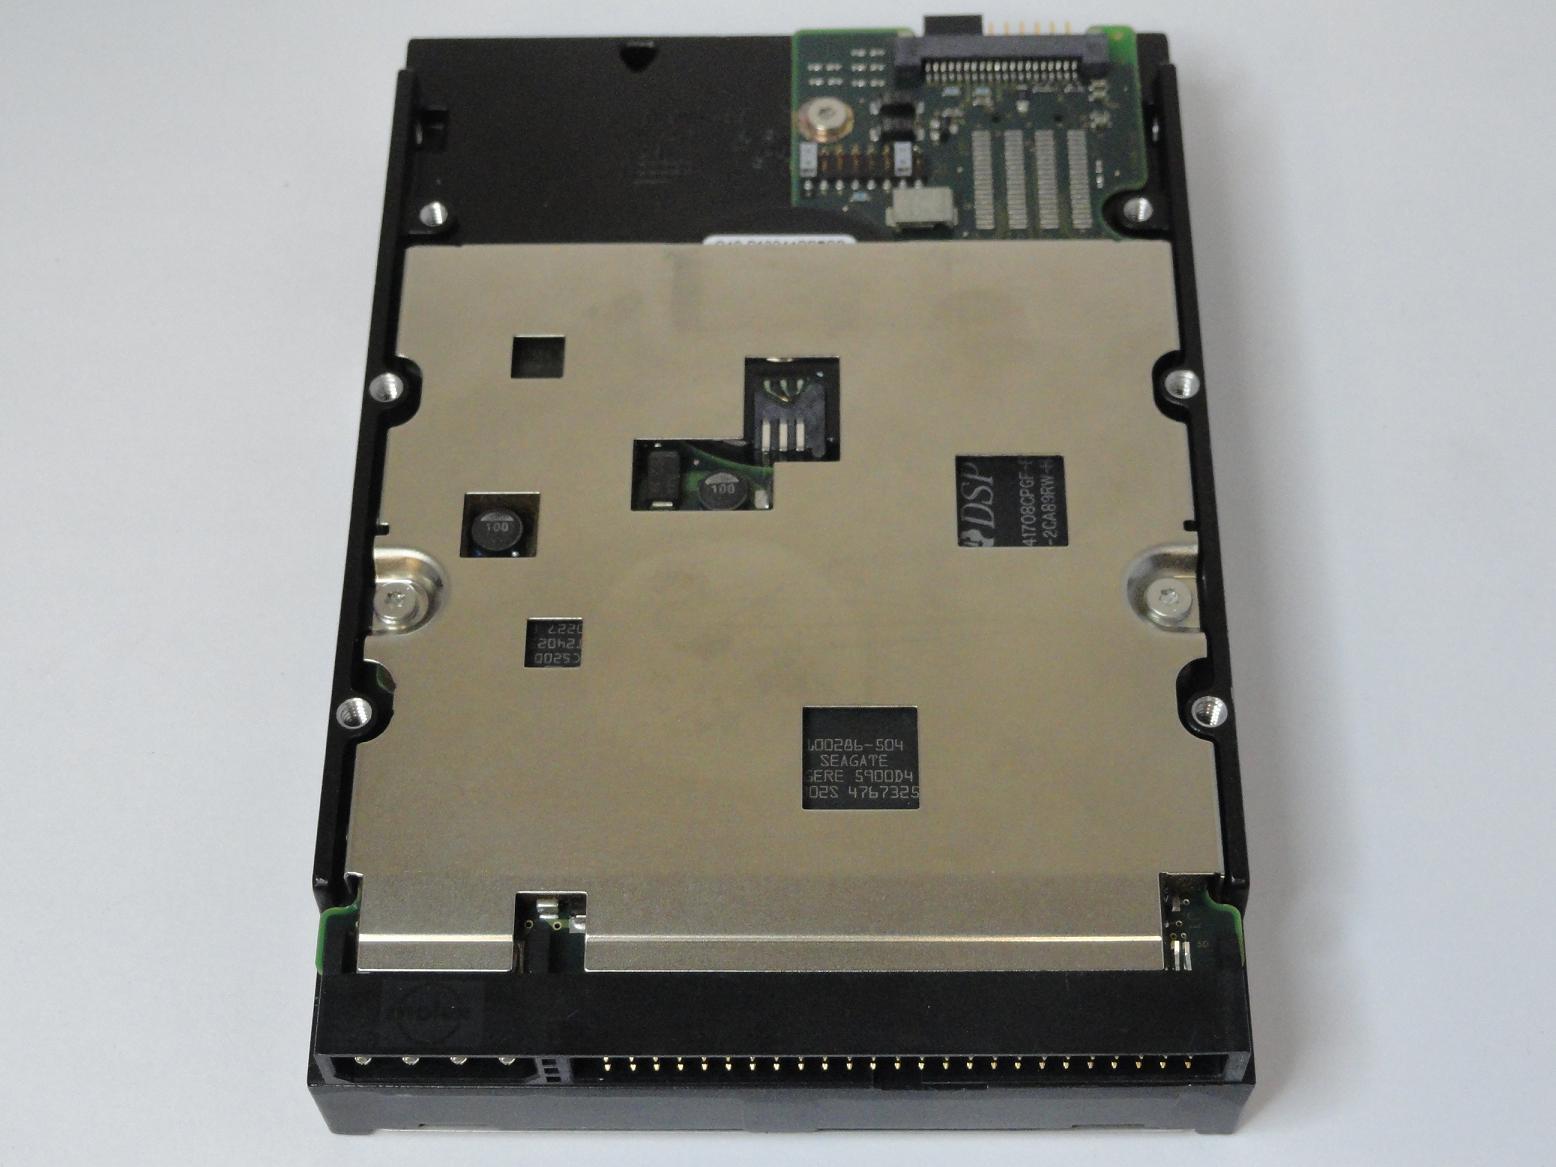 MC5469_9W8004-001_Seagate 18GB SCSI 50 Pin 7200rpm 3.5in HDD - Image2